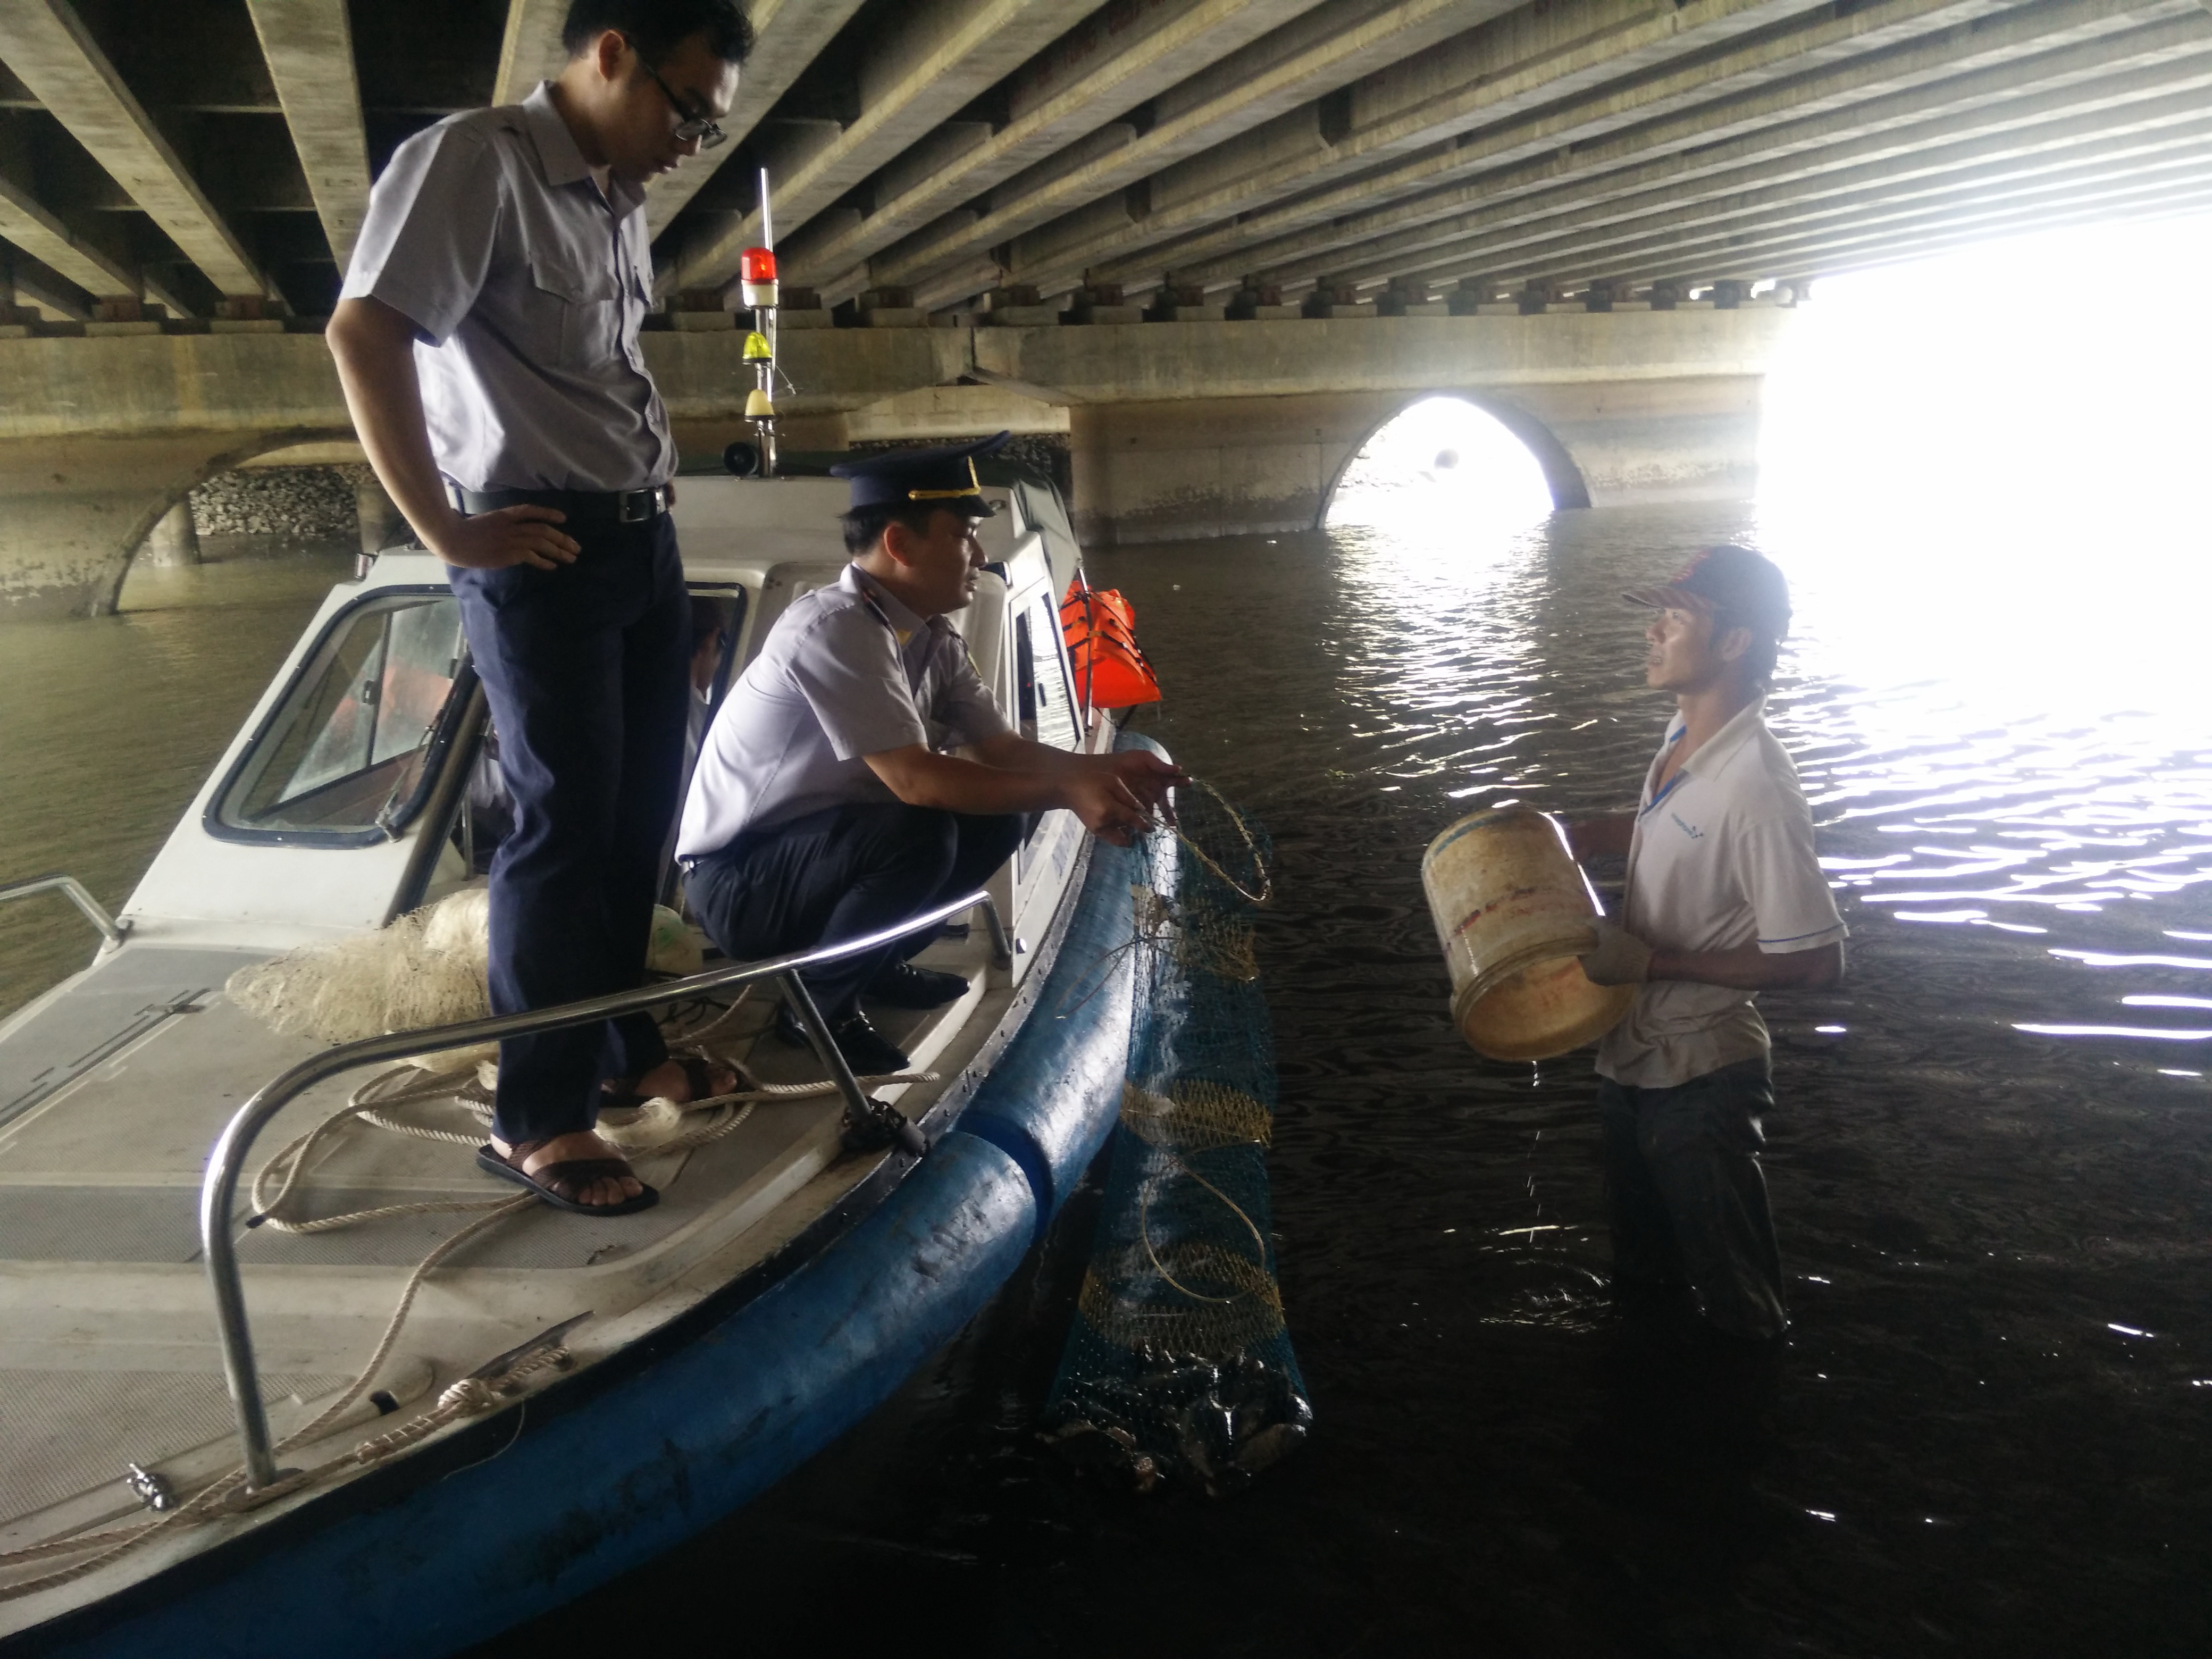 Đoàn kiểm tra phát hiện Lê Văn Giang đang chài lưới dưới chân cầu Thị Nghè 2 - Ảnh: Công Nguyên
